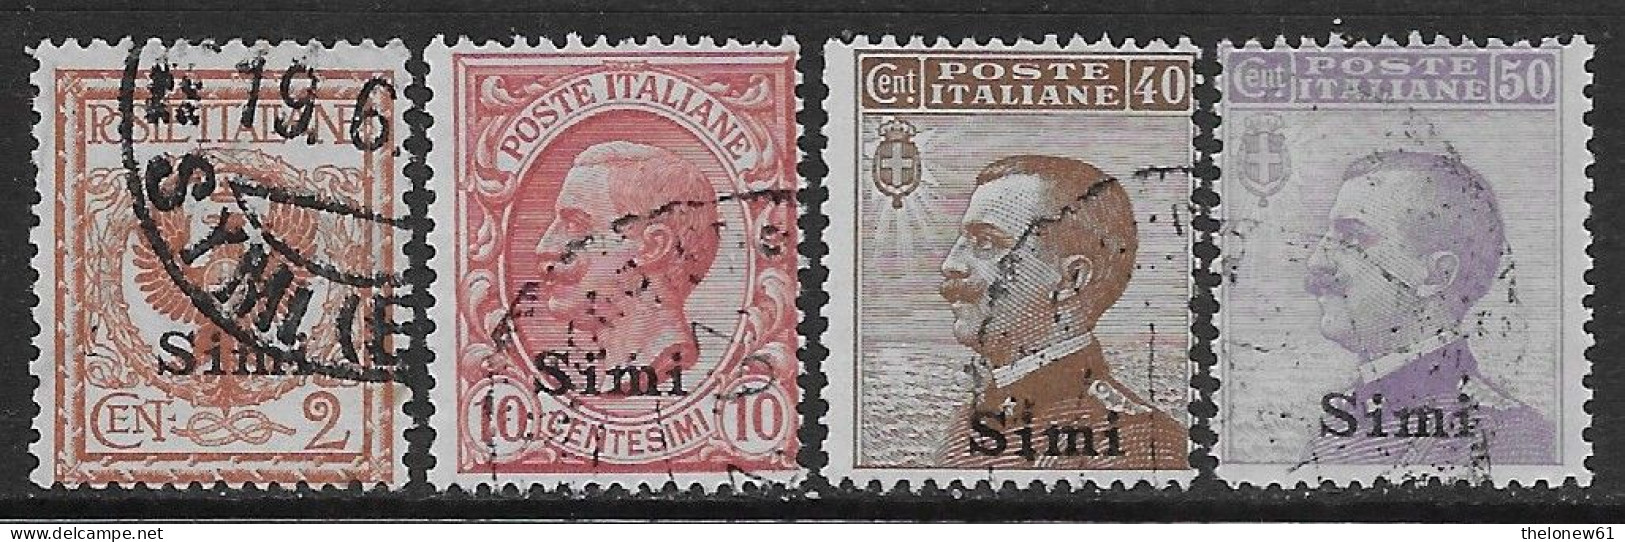 Italia Italy 1912 Colonie Egeo Simi Effigie 4val Sa N.1,3,6-7 US - Aegean (Simi)